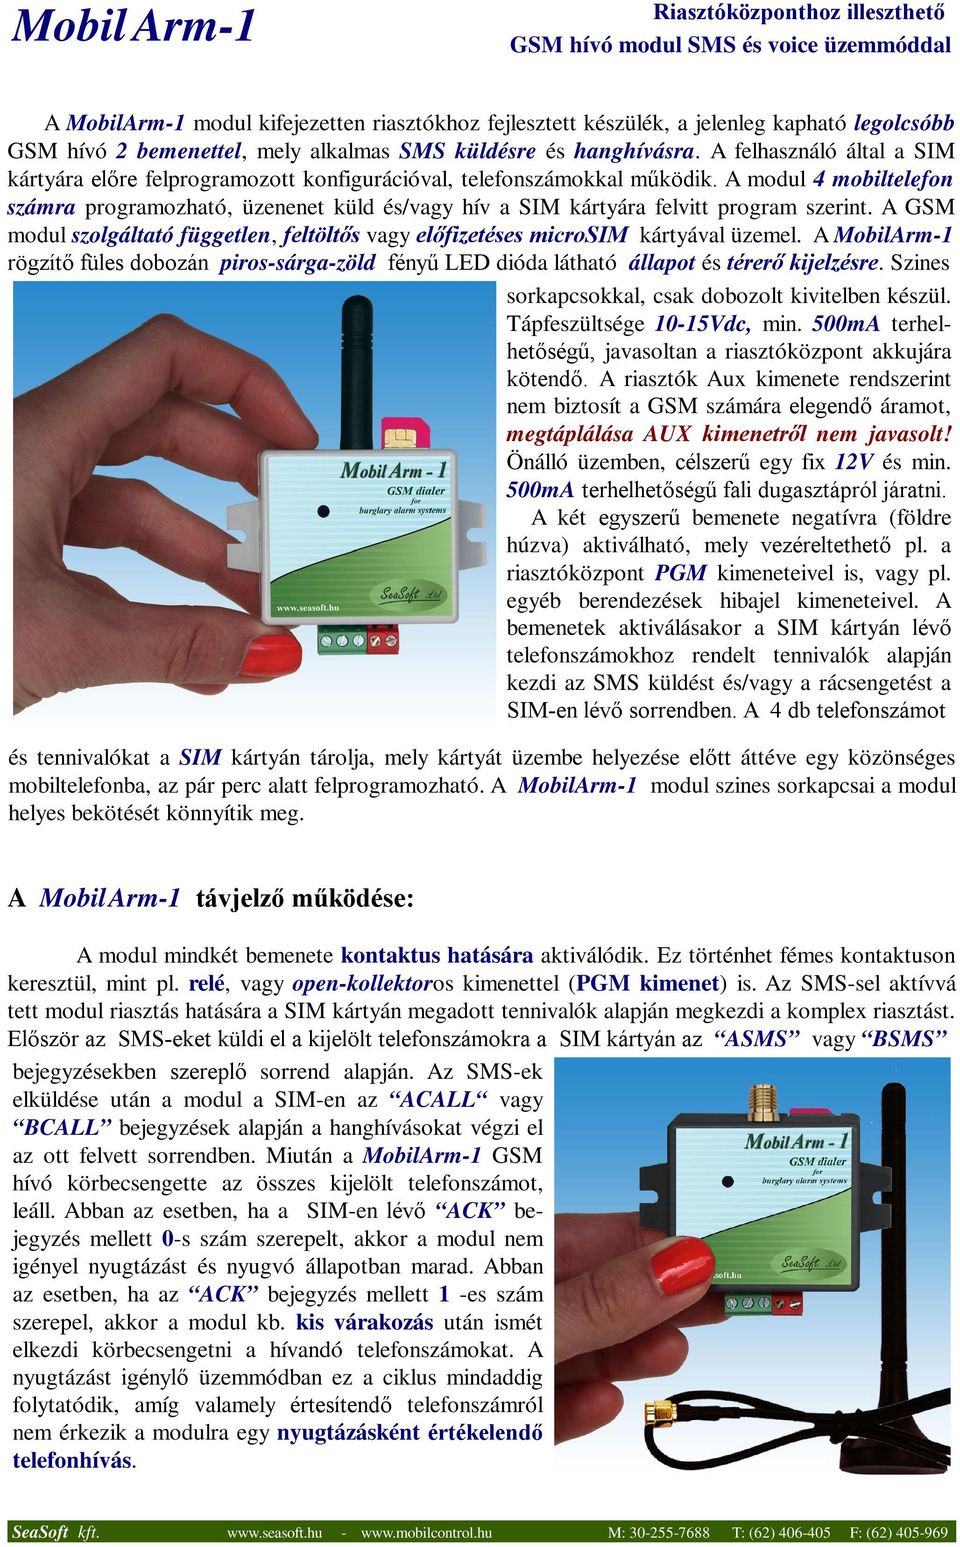 A modul 4 mobiltelefon számra programozható, üzenenet küld és/vagy hív a SIM kártyára felvitt program szerint. A GSM modul szolgáltató független, feltöltős vagy előfizetéses microsim kártyával üzemel.